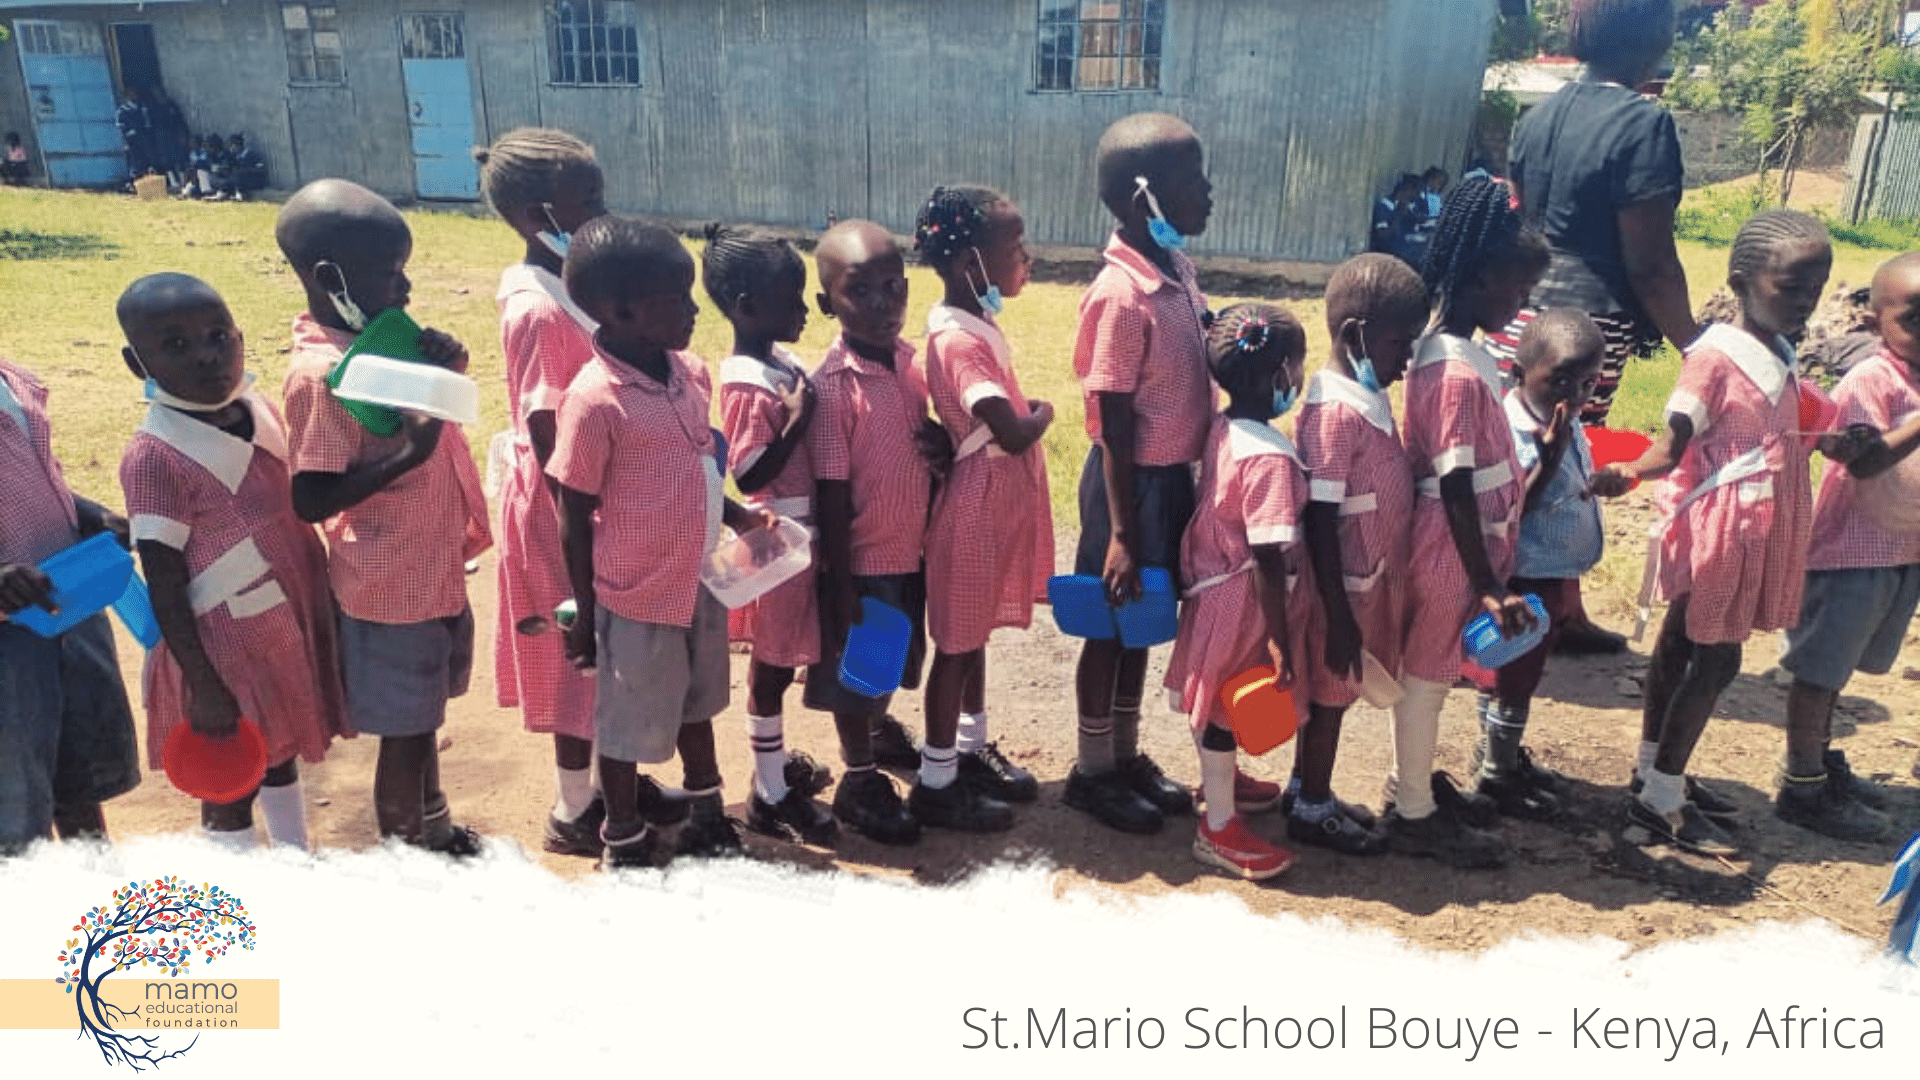 St.Mario School - Adotta un insegnante-Mamo Educational Foundation